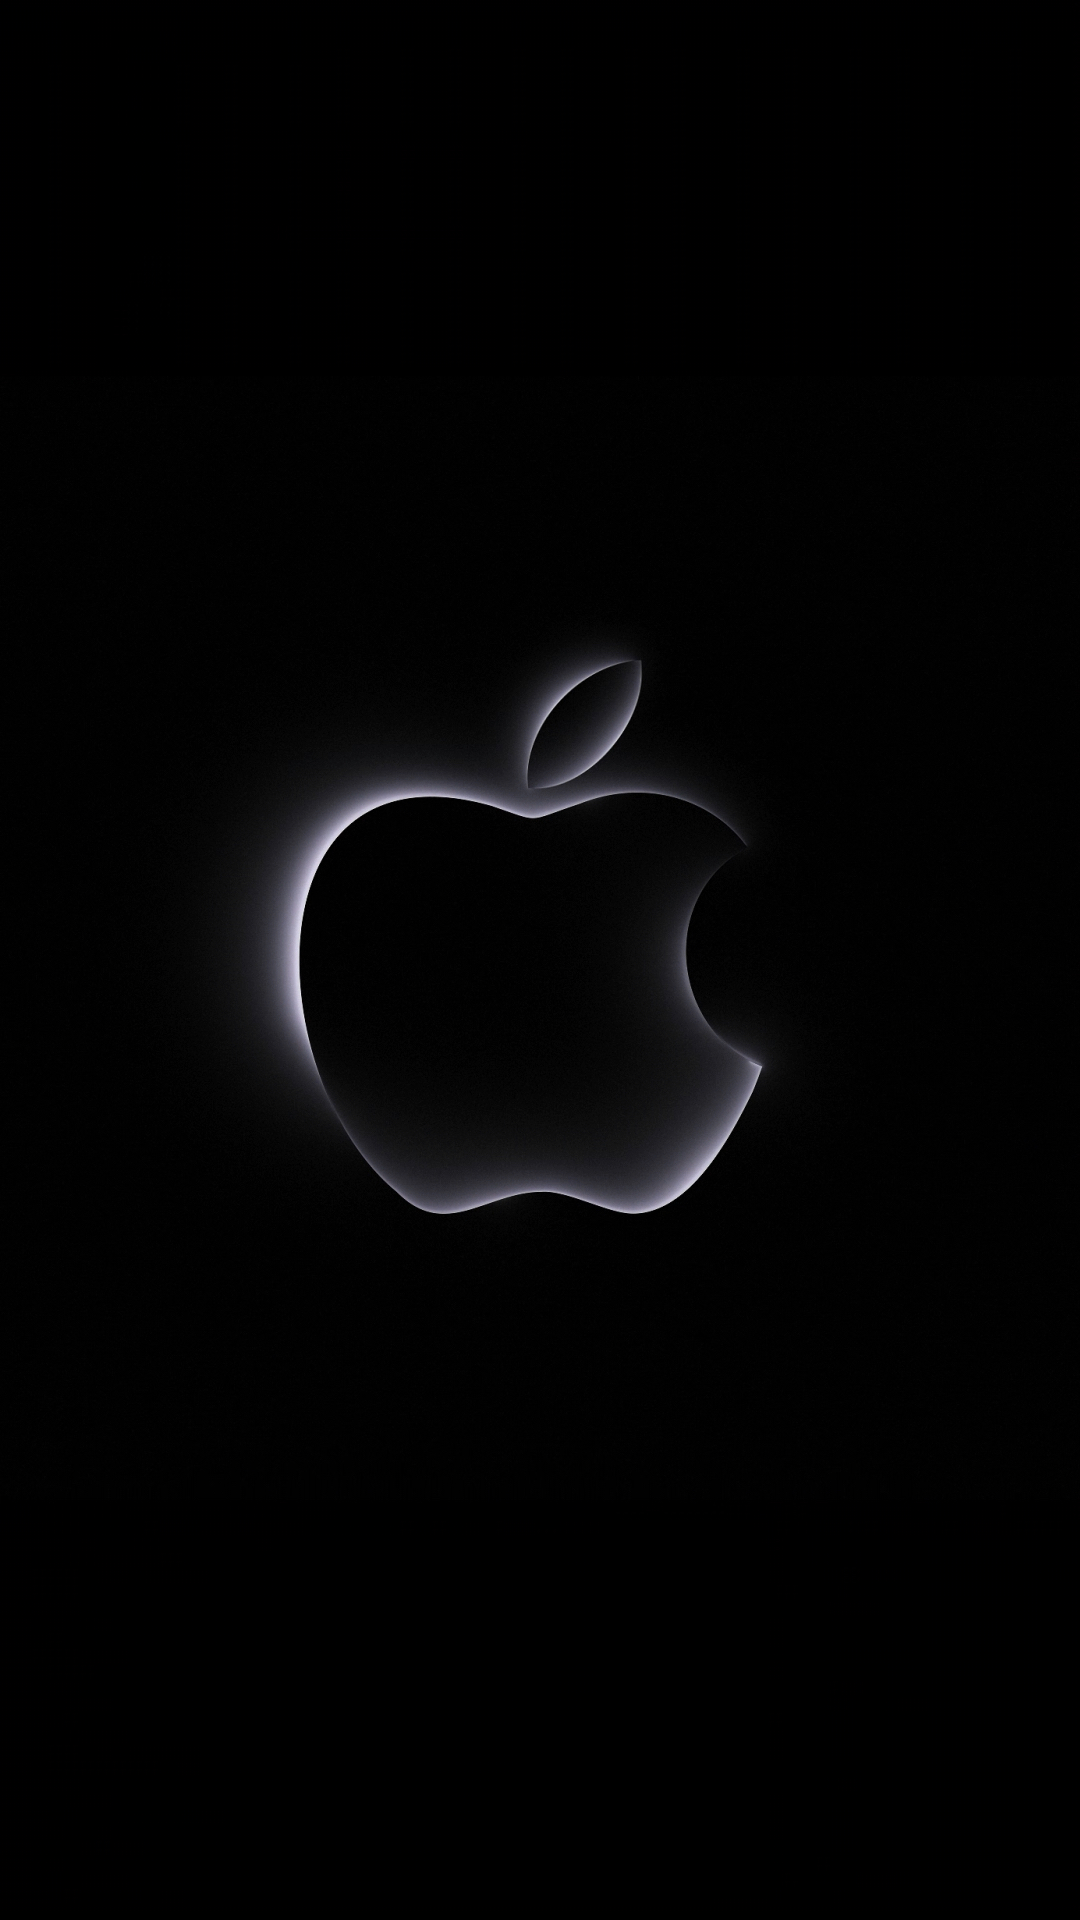 极致细节!苹果十月动态logo来了,纯ae制作,马上发教程!